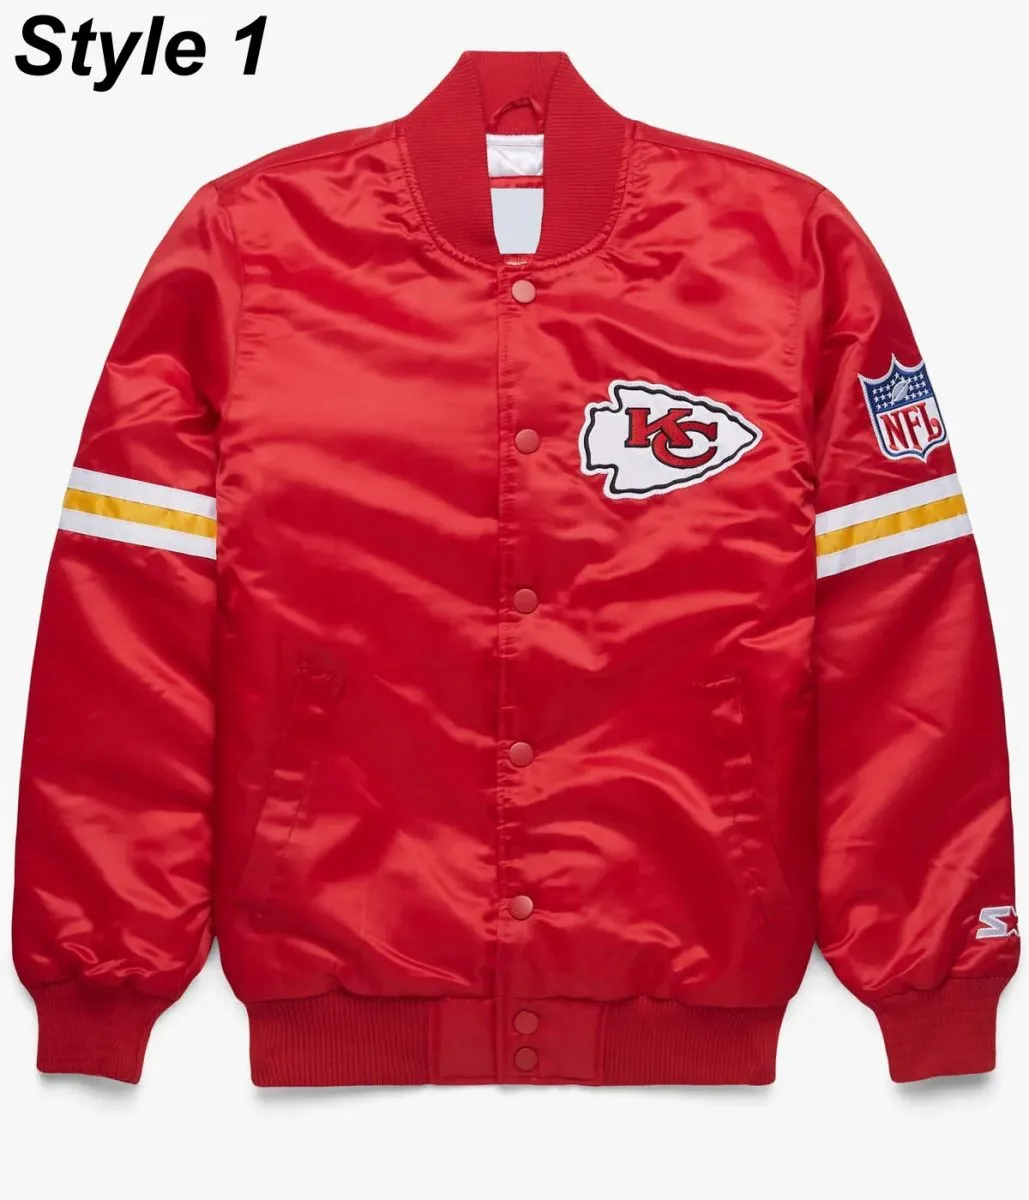 Kansas City Chiefs Satin Bomber Red Jacket